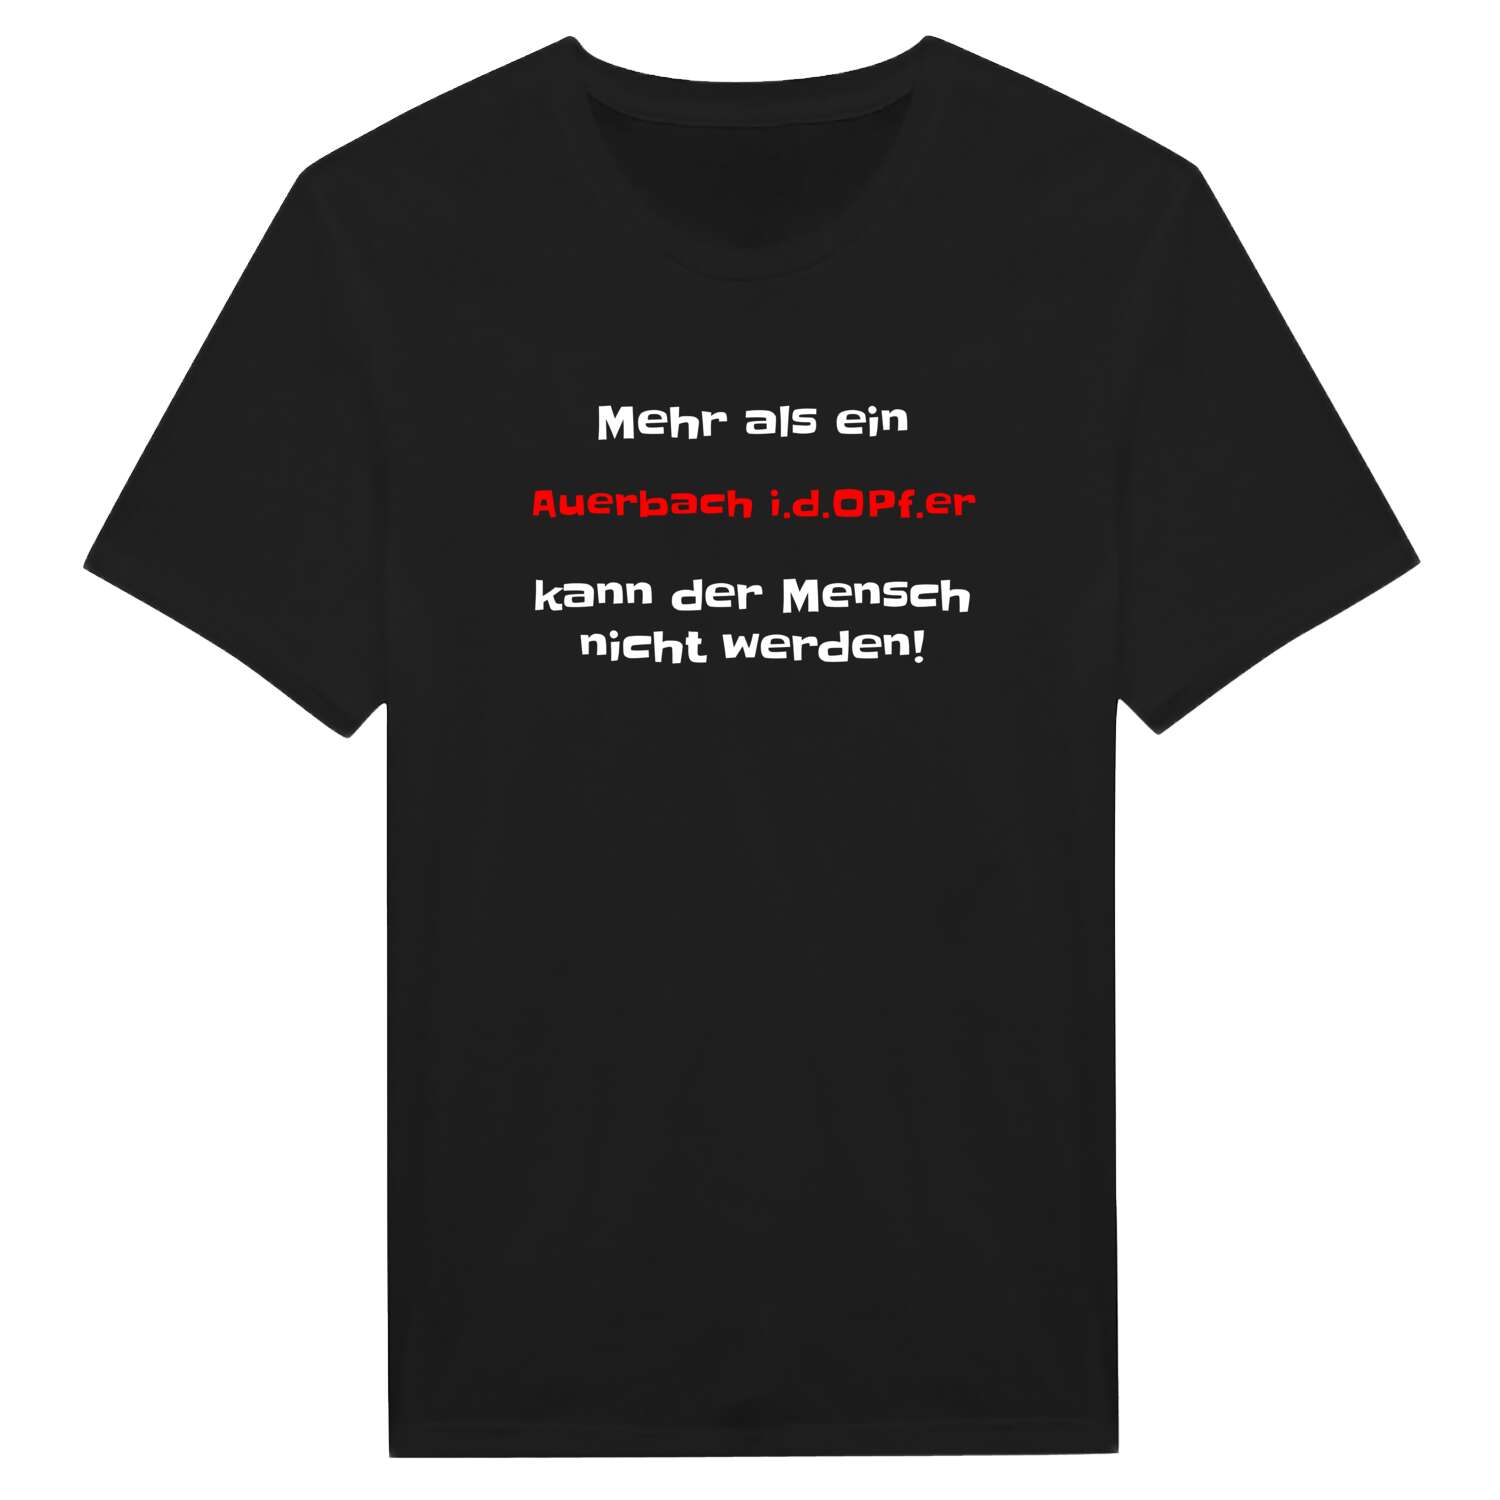 Auerbach i.d.OPf. T-Shirt »Mehr als ein«